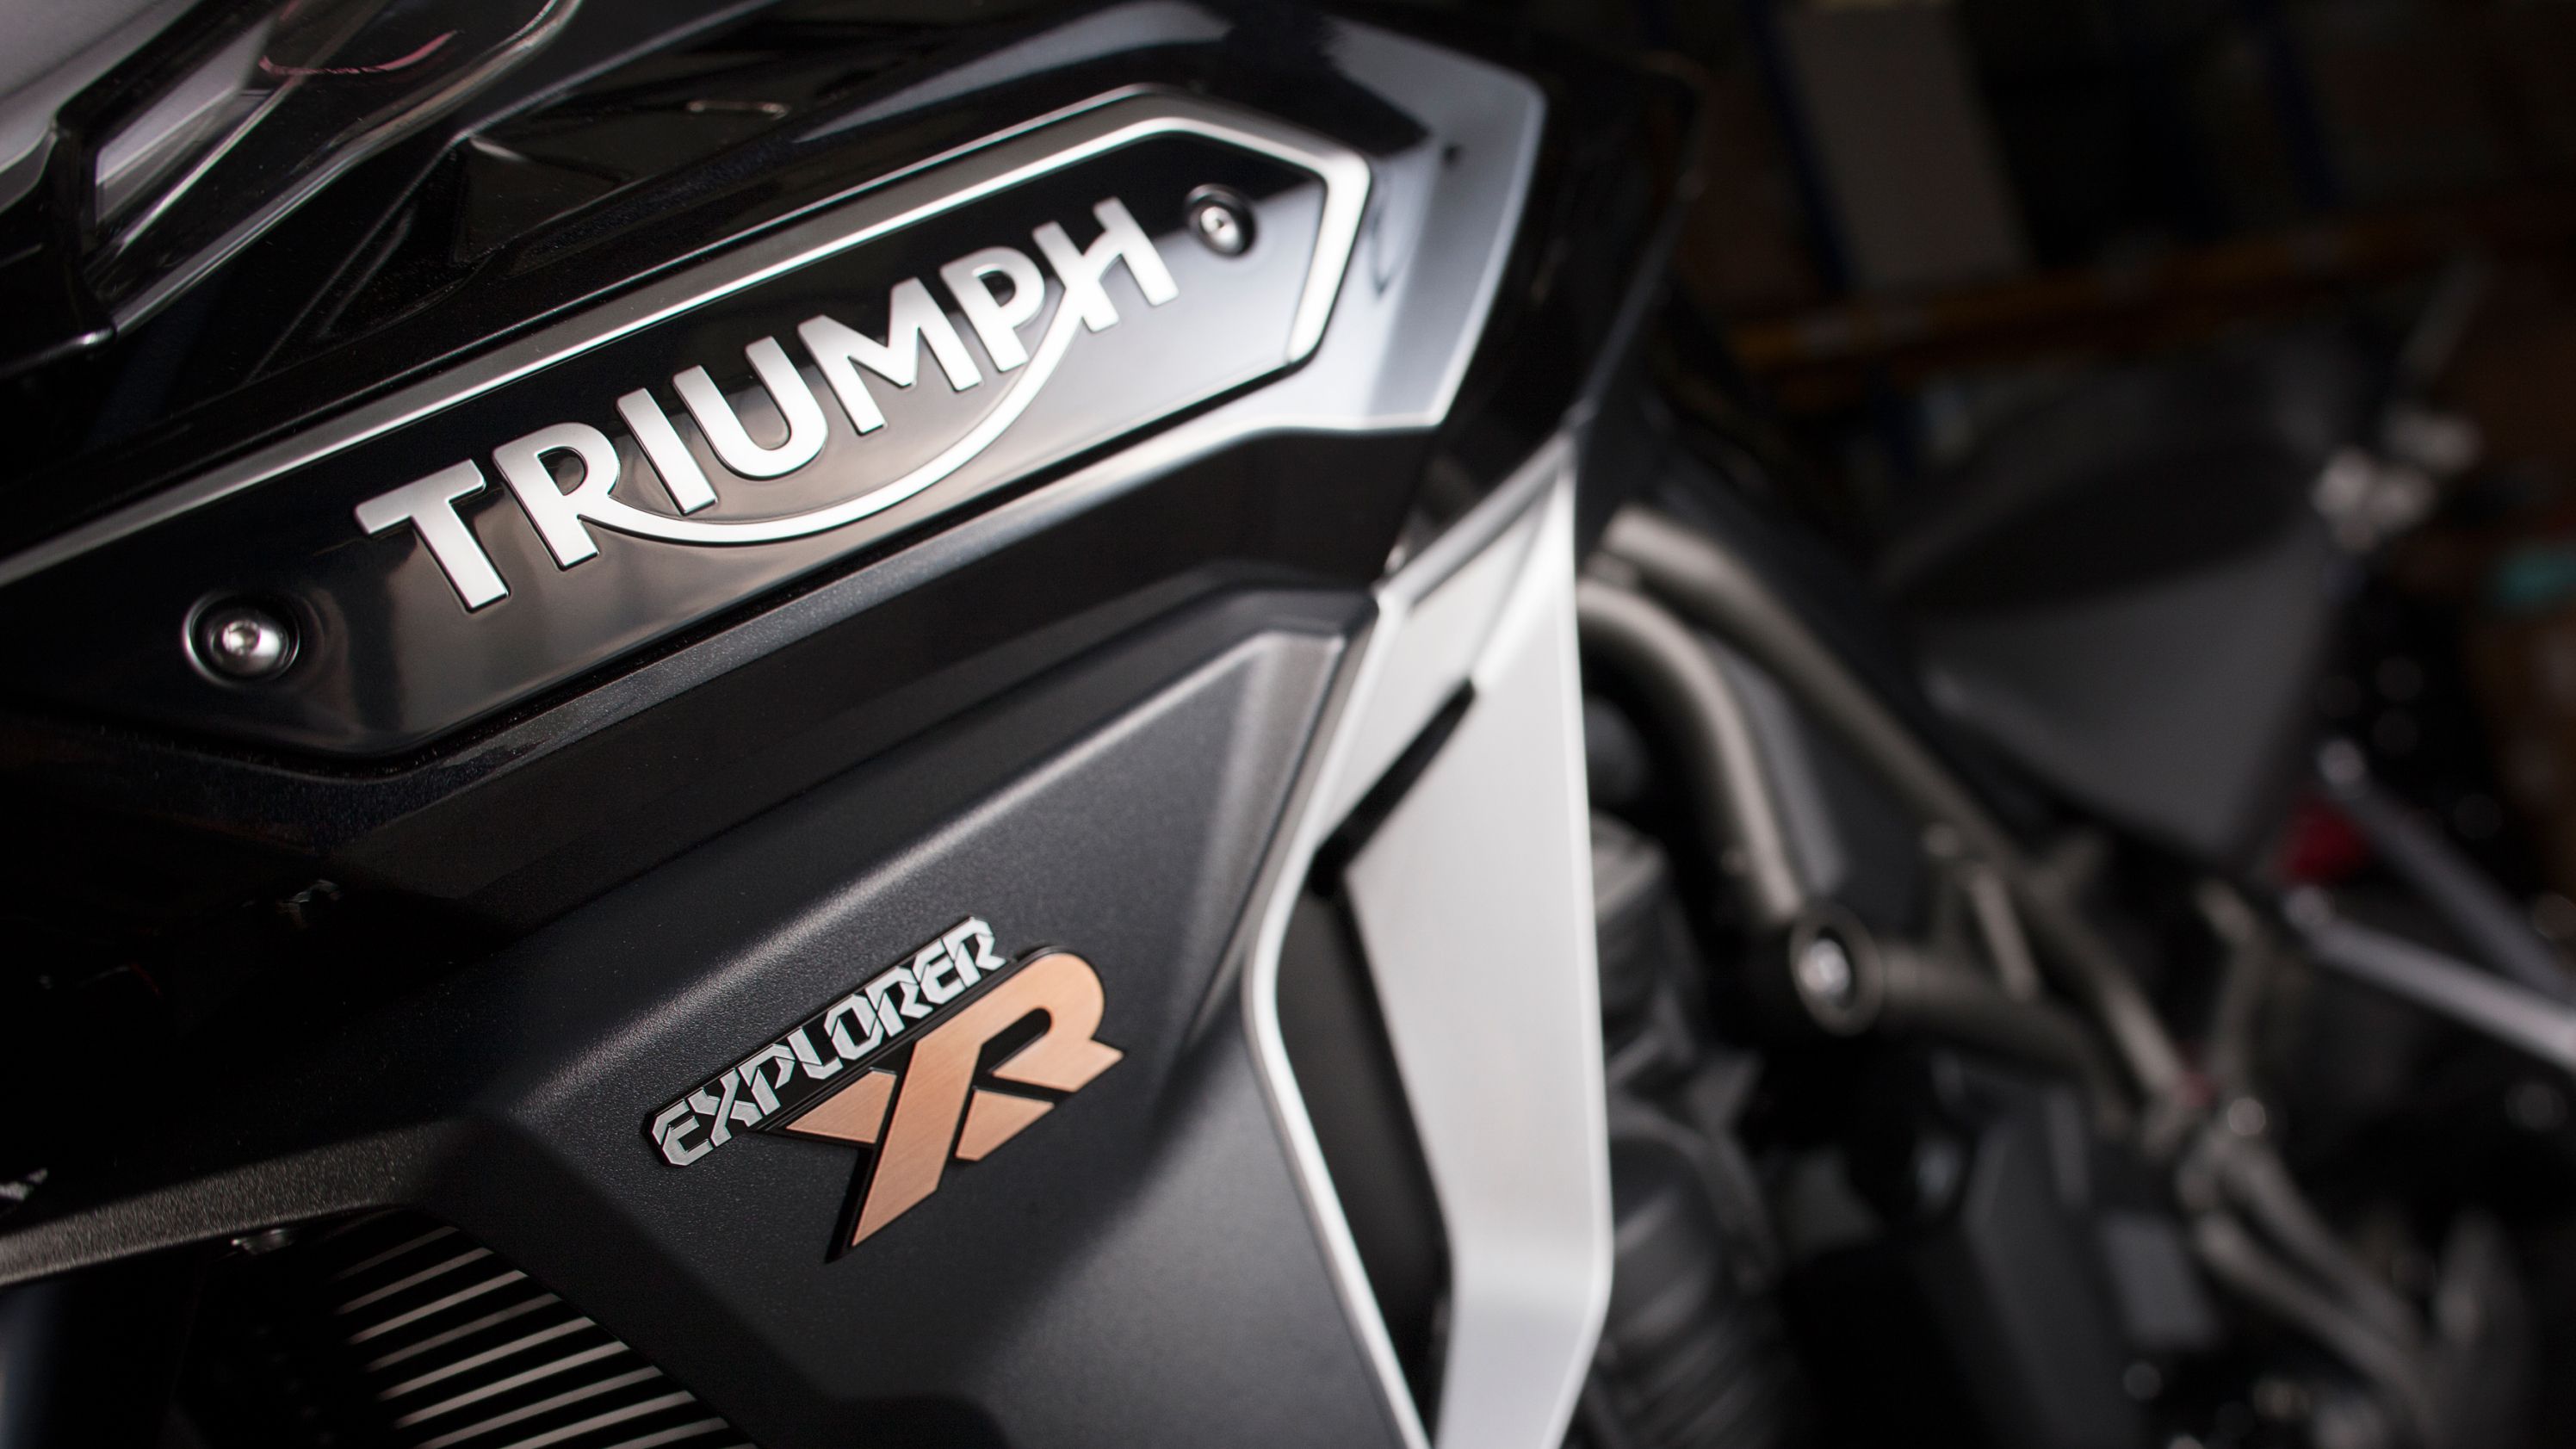 2016 - 2017 Triumph Tiger Explorer XR